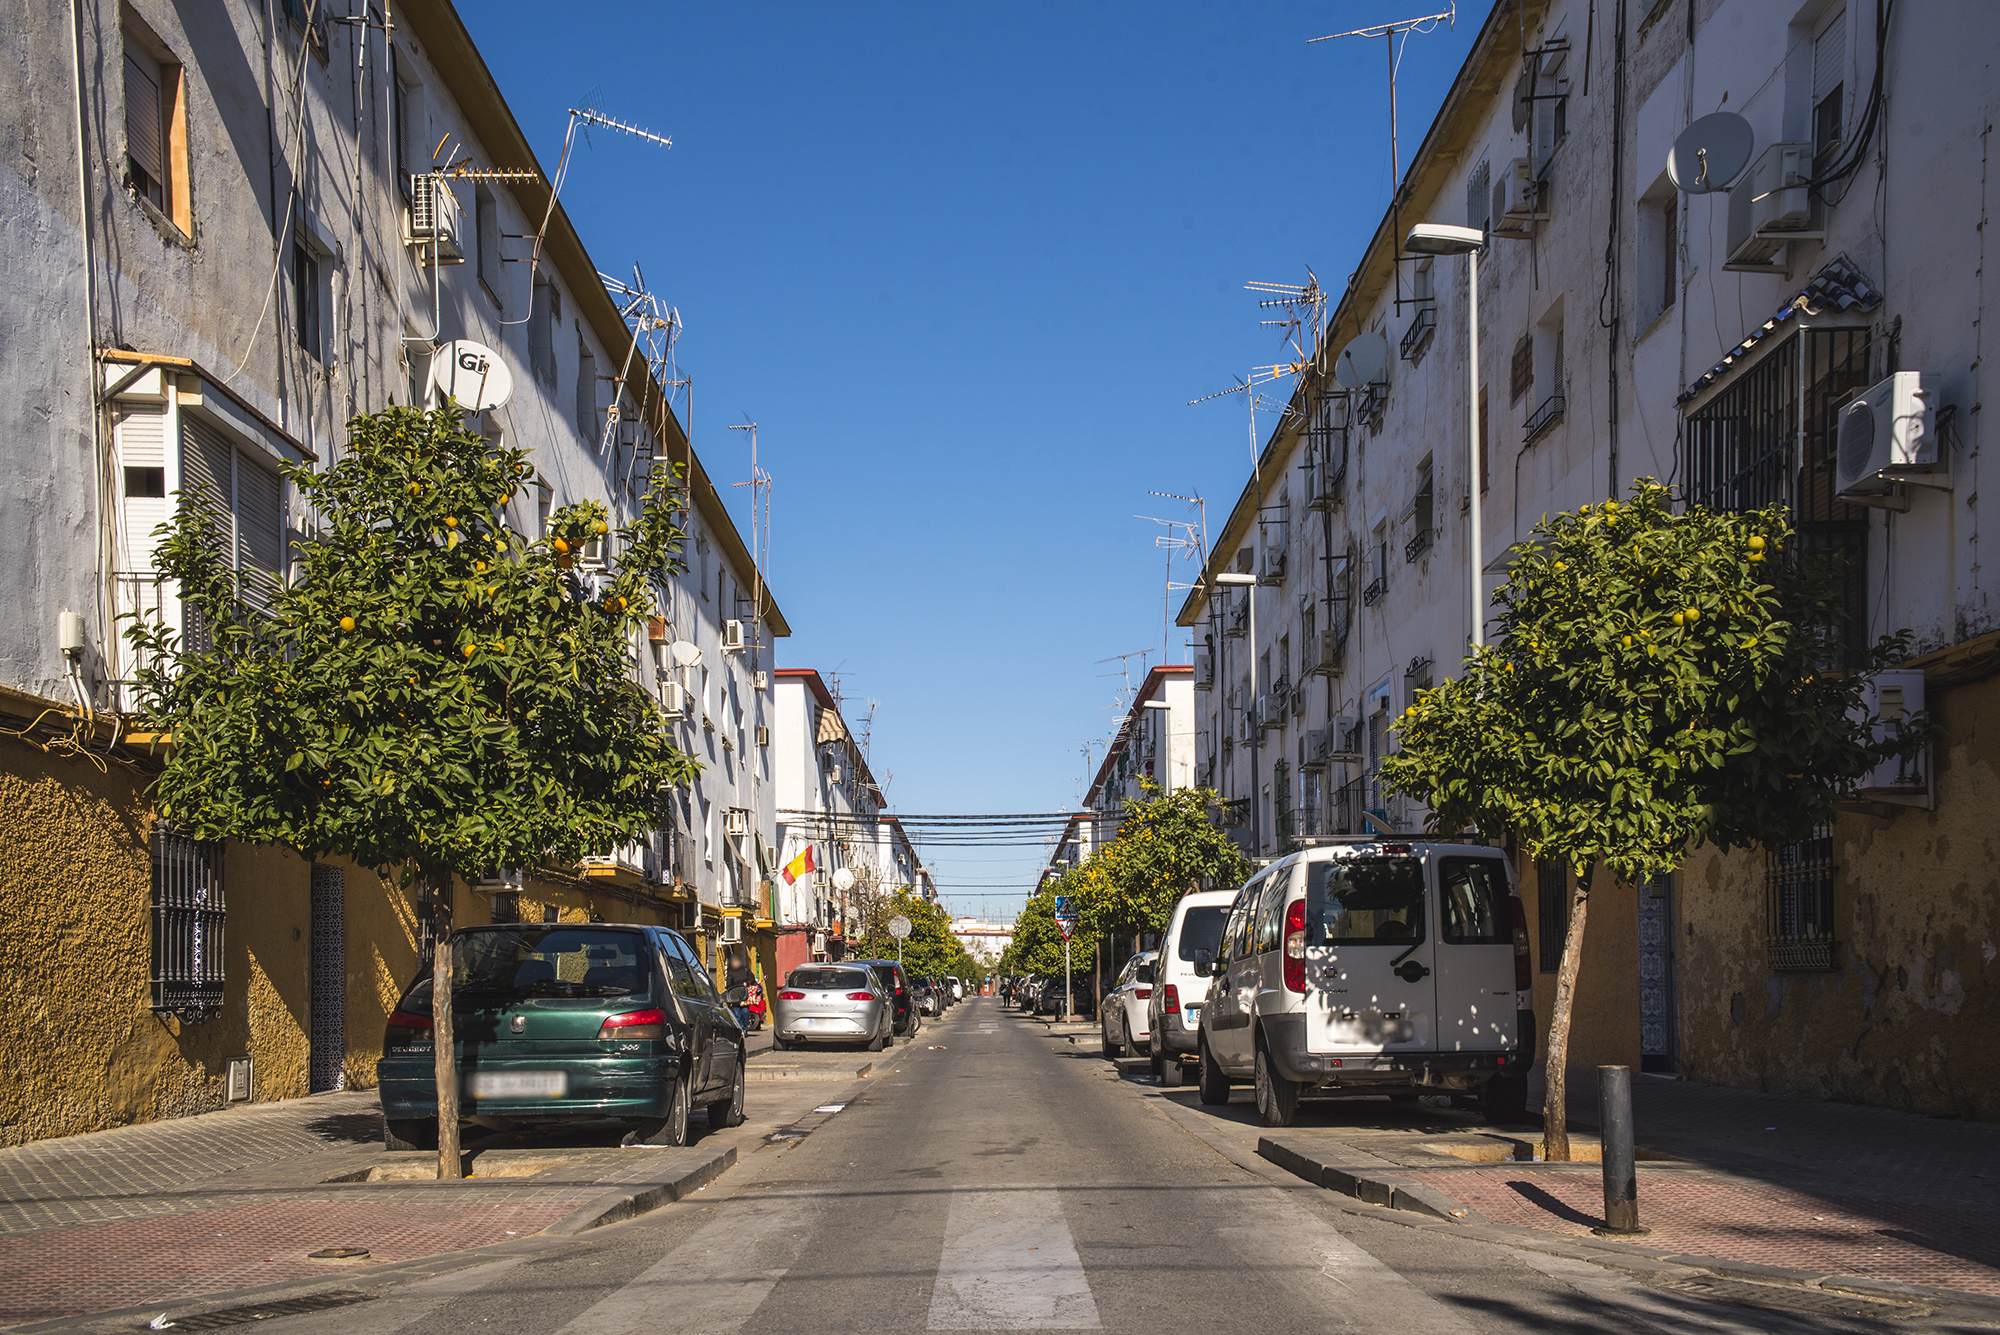 Ser joven en Los Pajaritos, el barrio más pobre de España - VICE